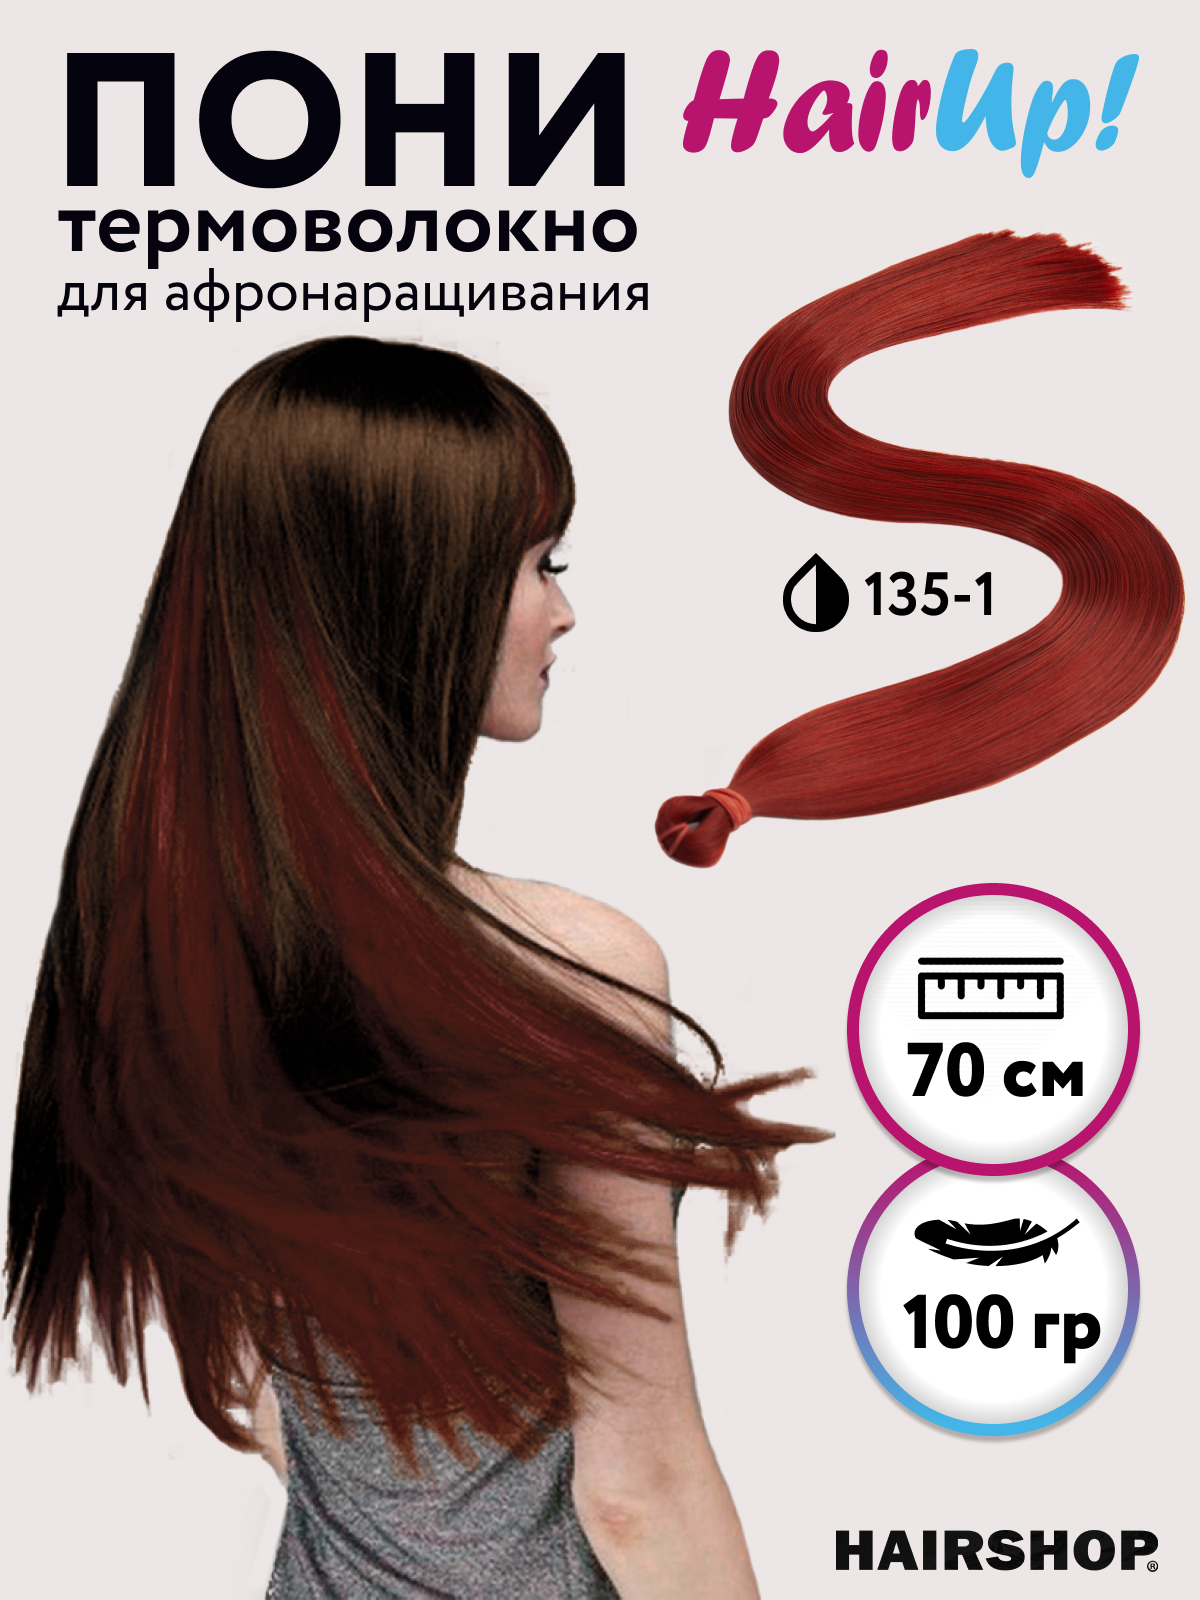 Канекалон Hairshop Пони HairUp для точечного афронаращивания прямые 135-1 1,4м 100г канекалон hairshop пони hairup для точечного афронаращивания прямые 118 1 бордо 1 4м 100г